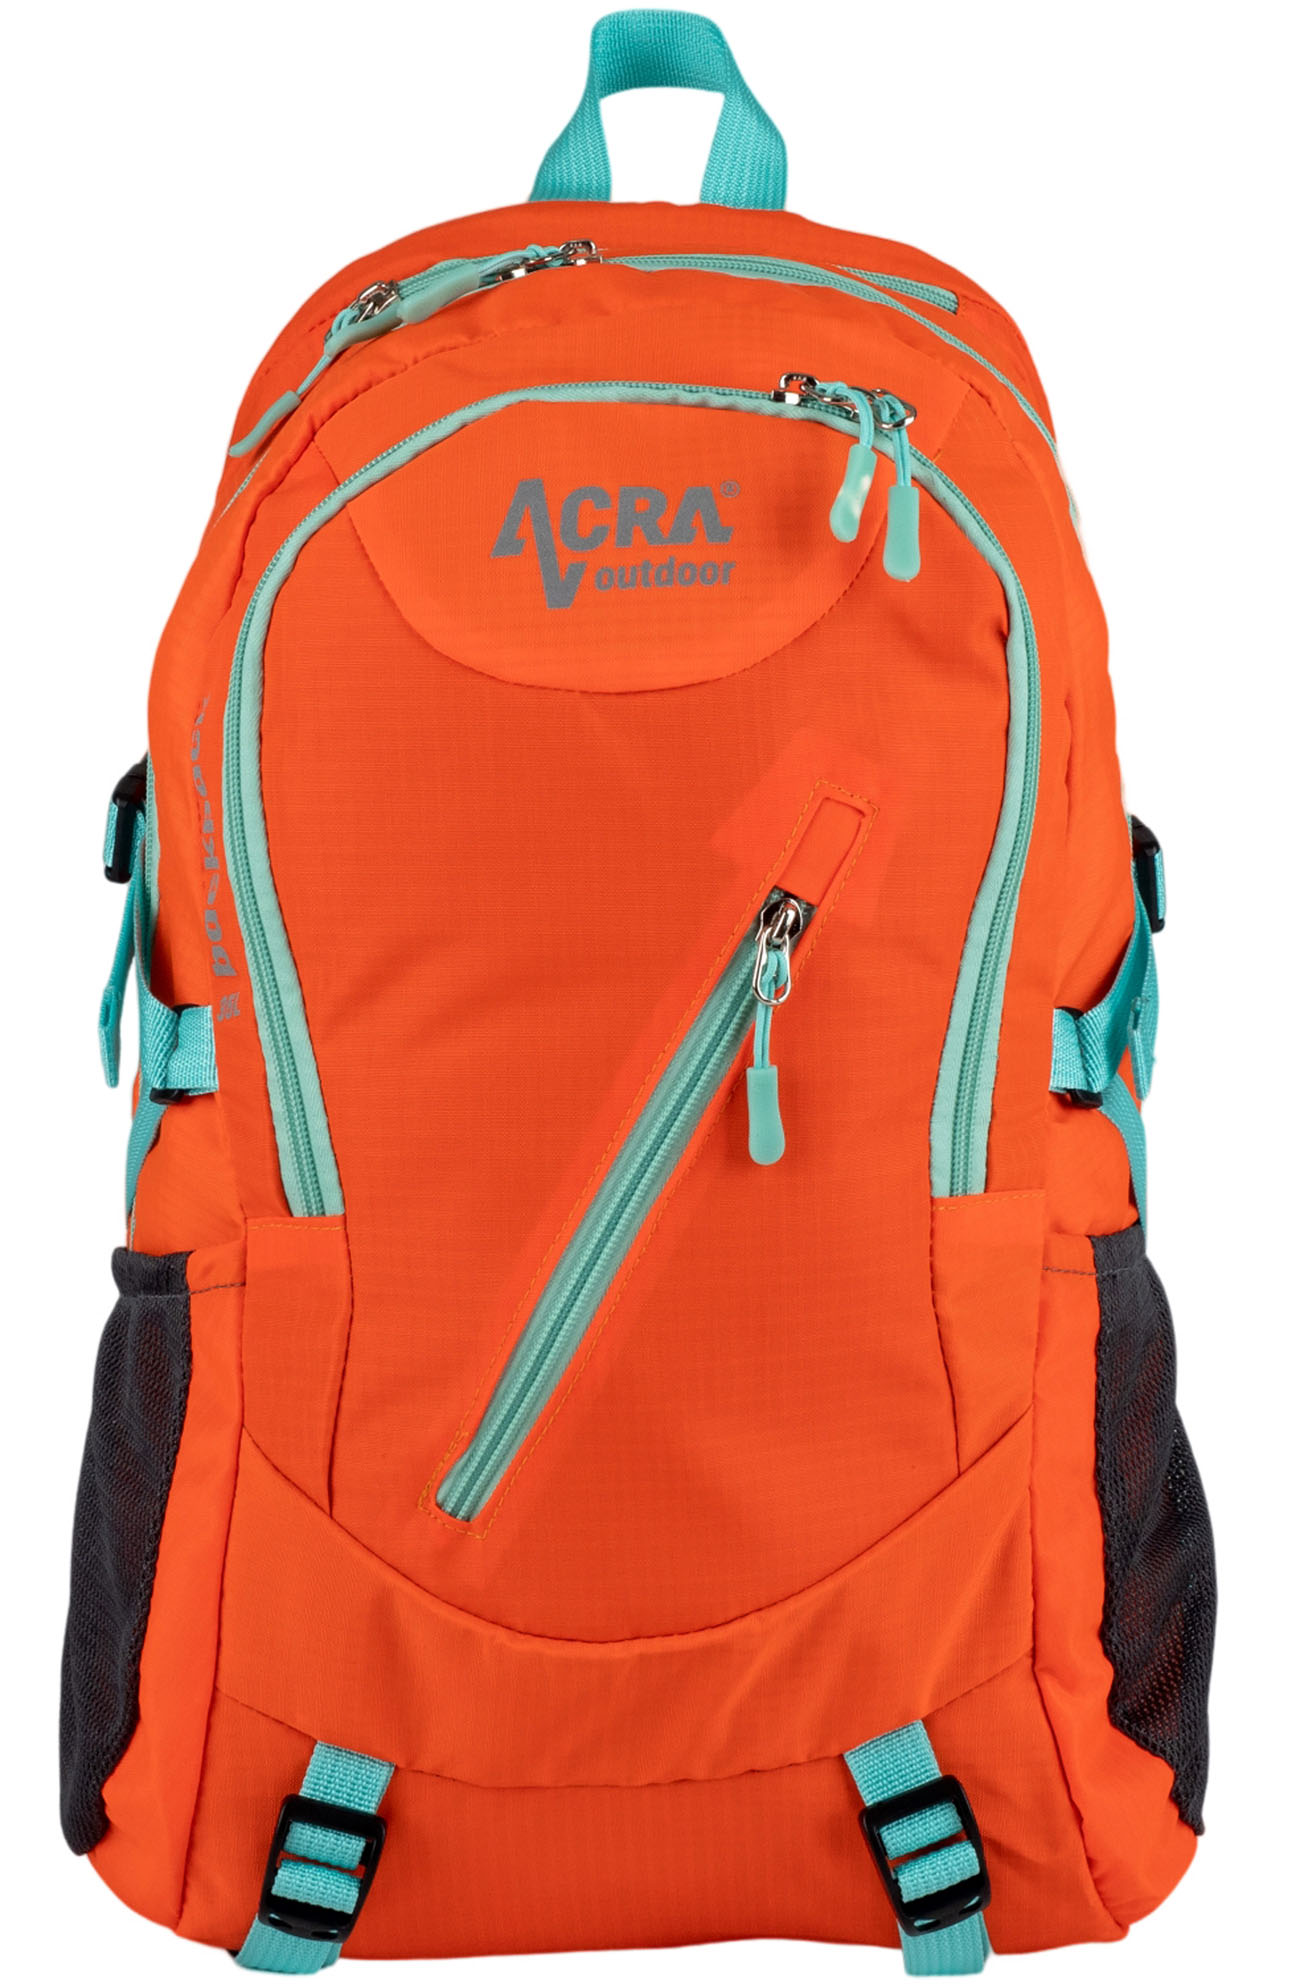 Batoh Backpack 35 L turistický oranžový BA35-OR